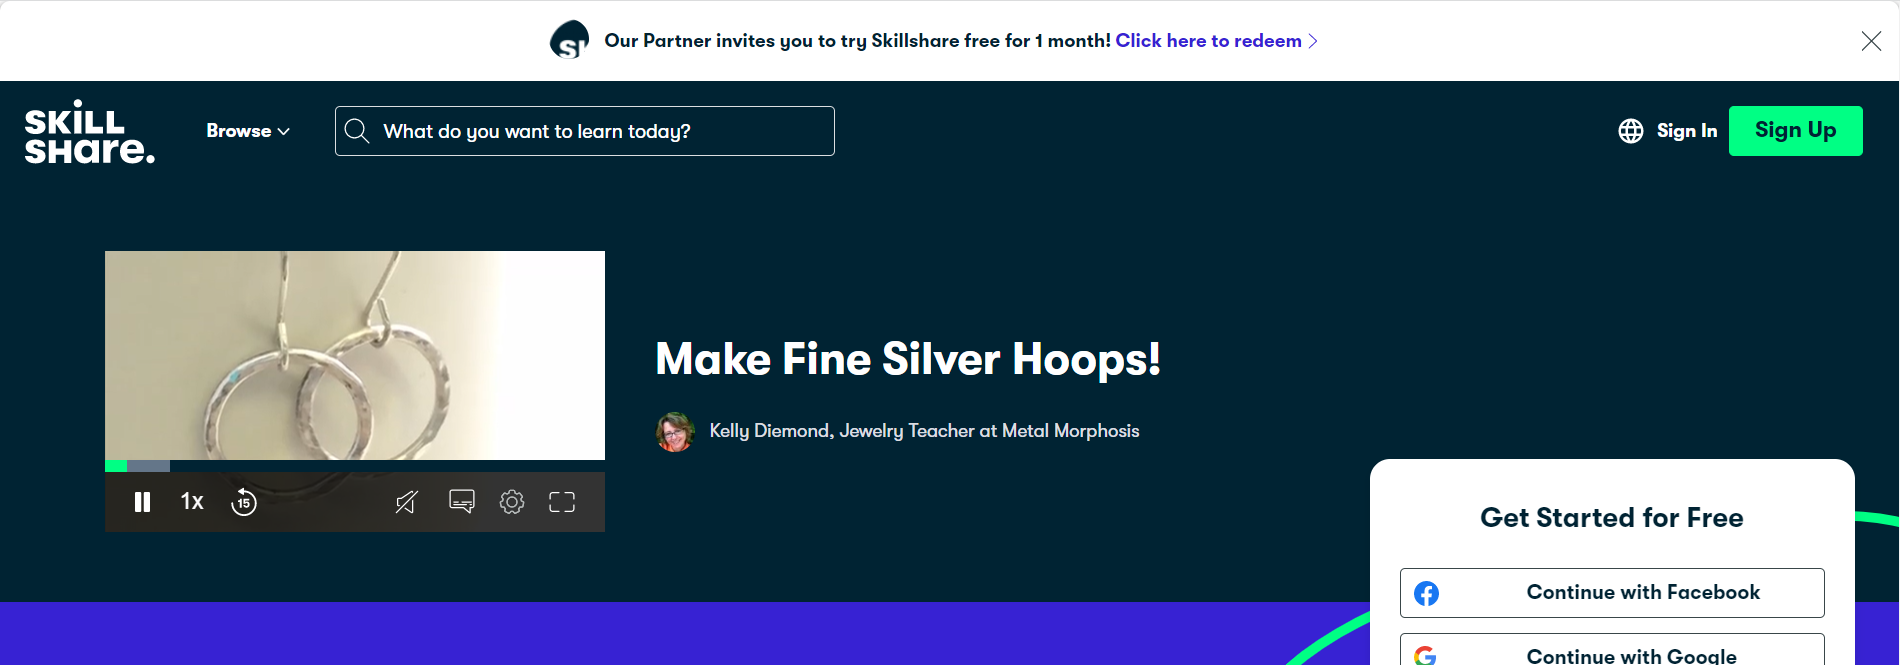 Make Fine Silver Hoops